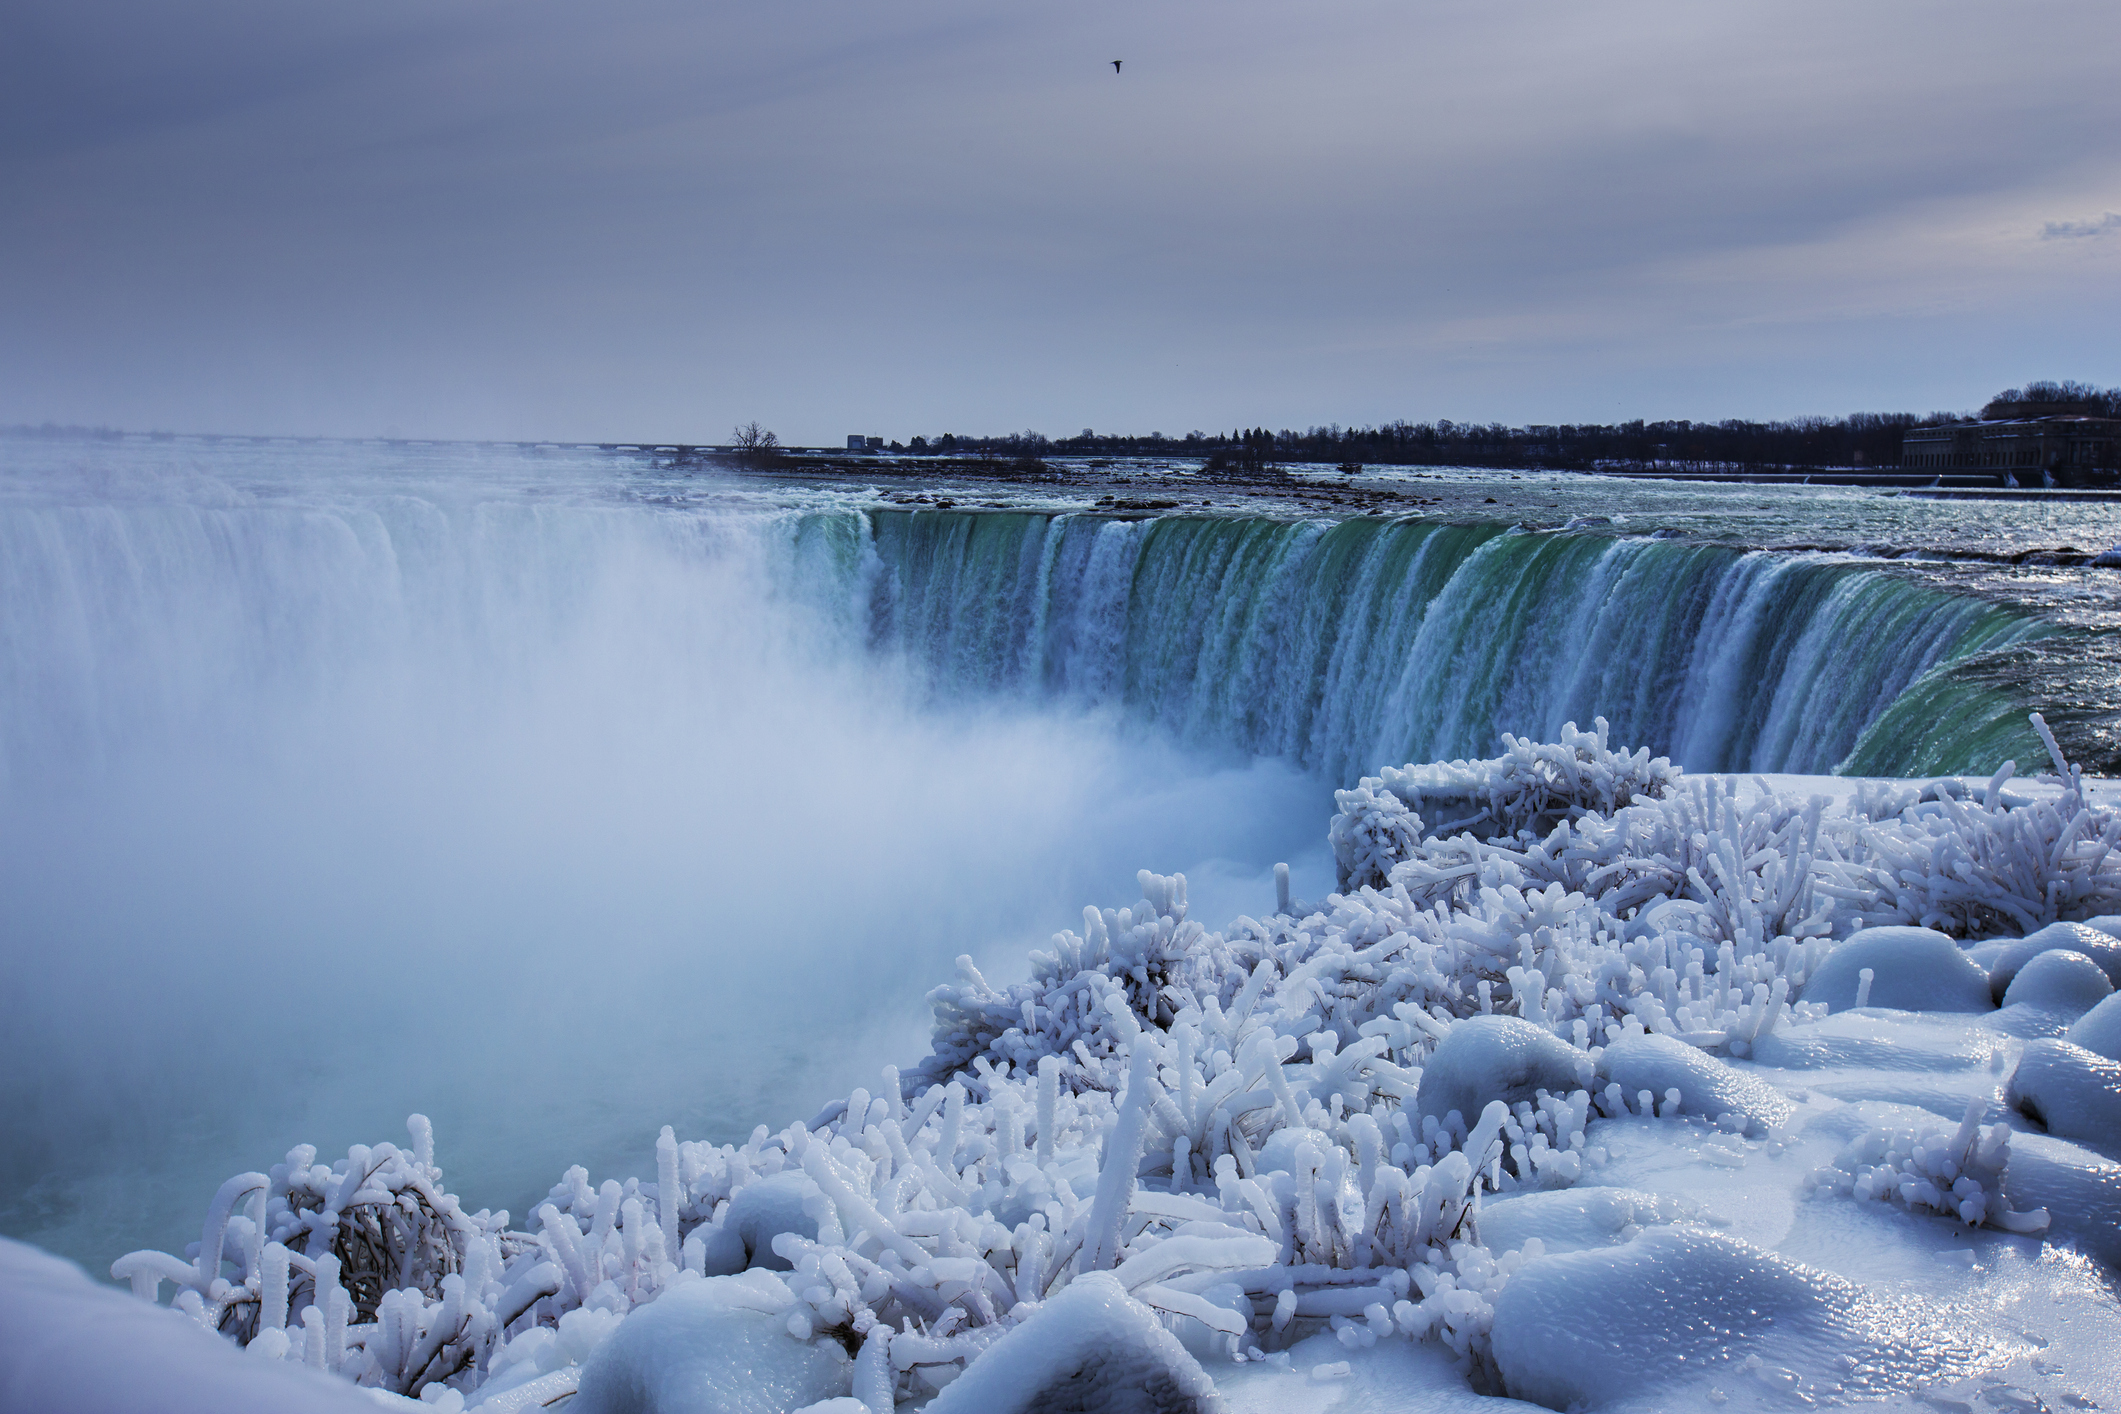 Niagara cascades in winter, Ontario Canada.